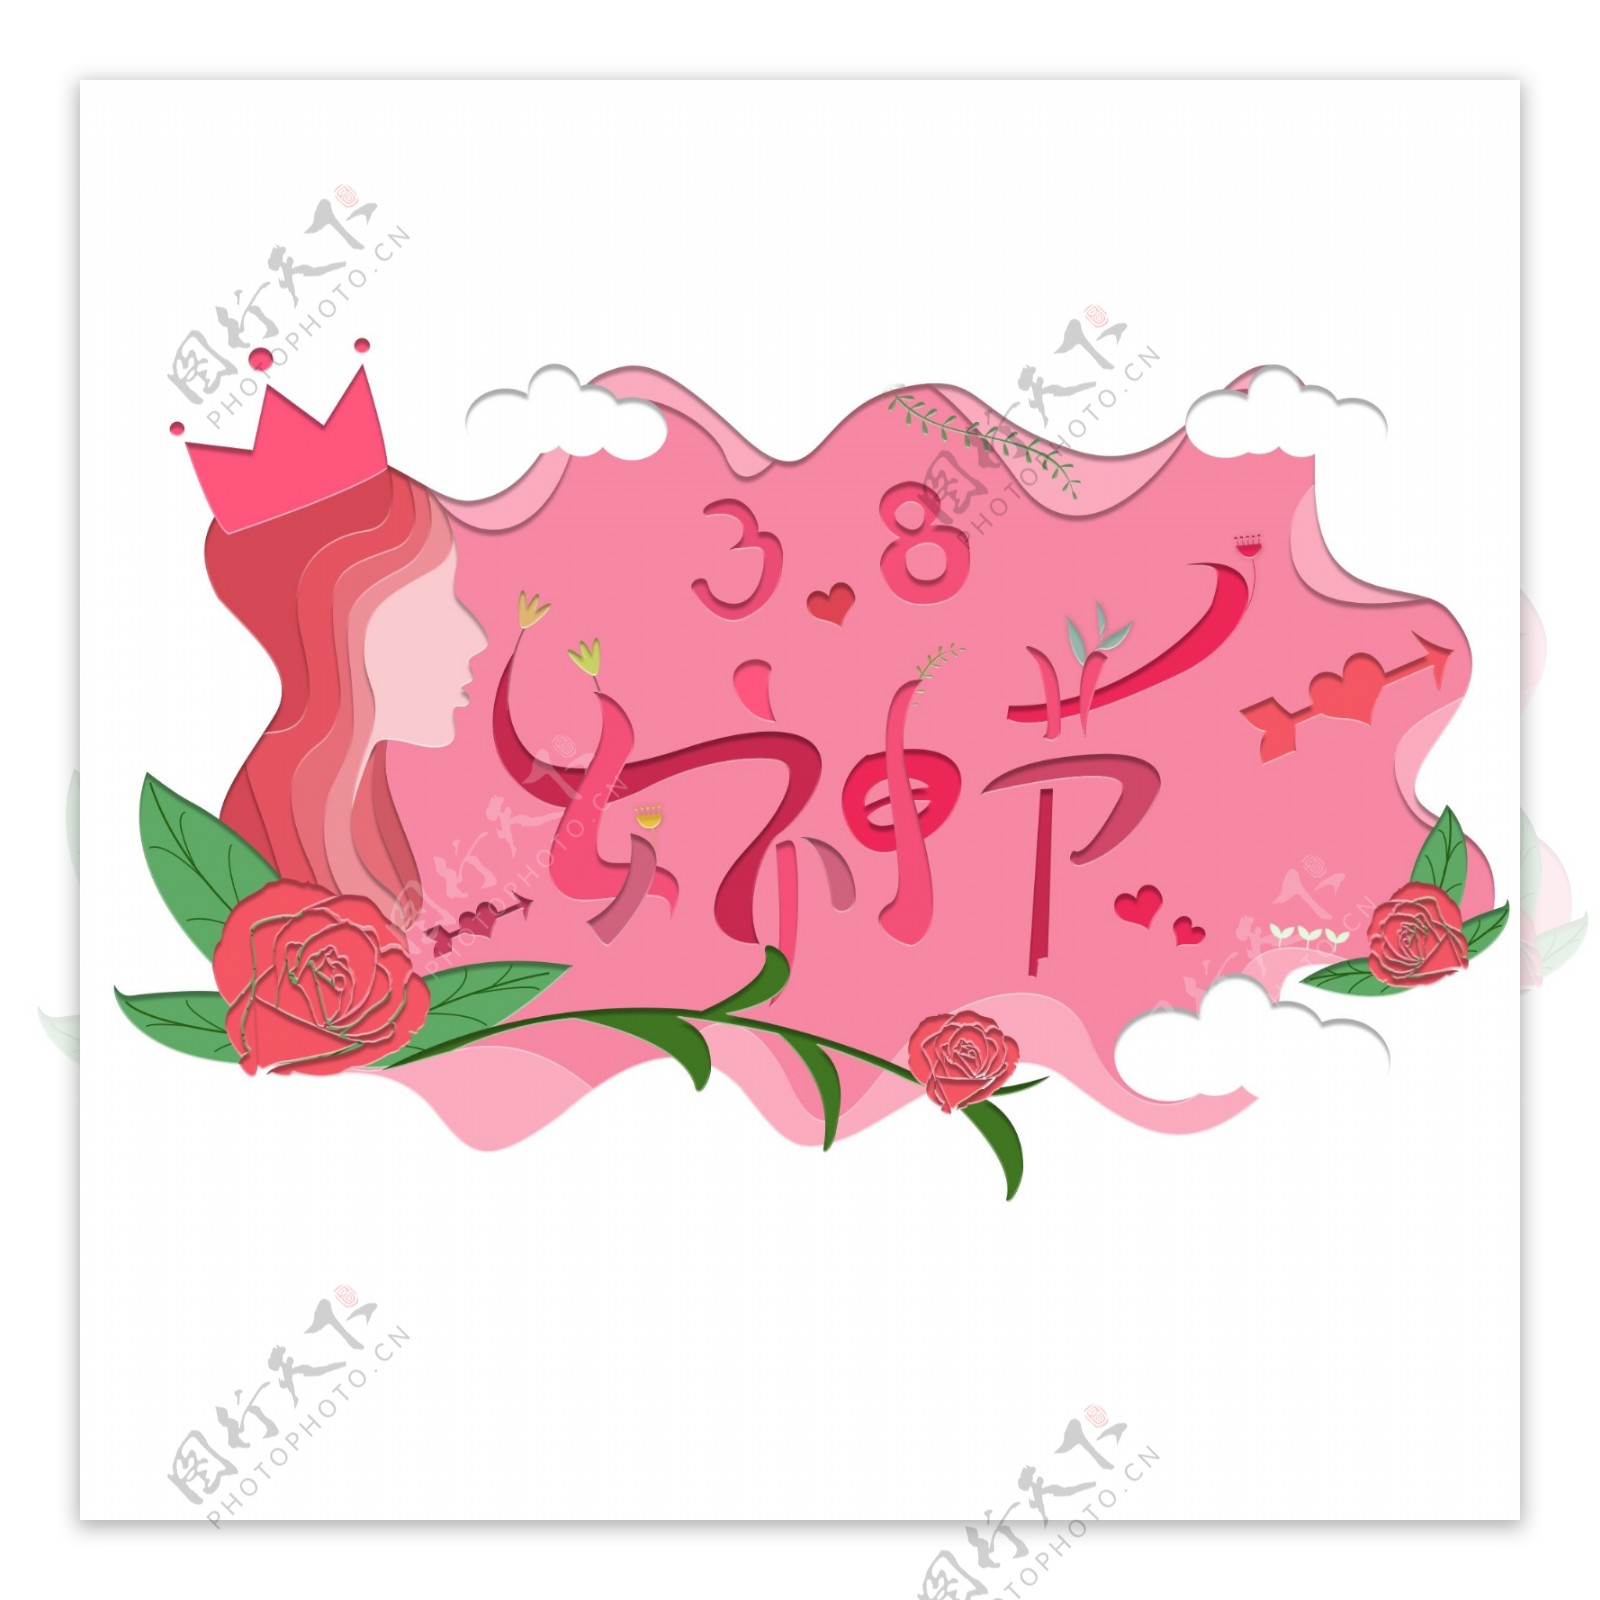 印象剪纸风格女性玫瑰花女神节装饰图案